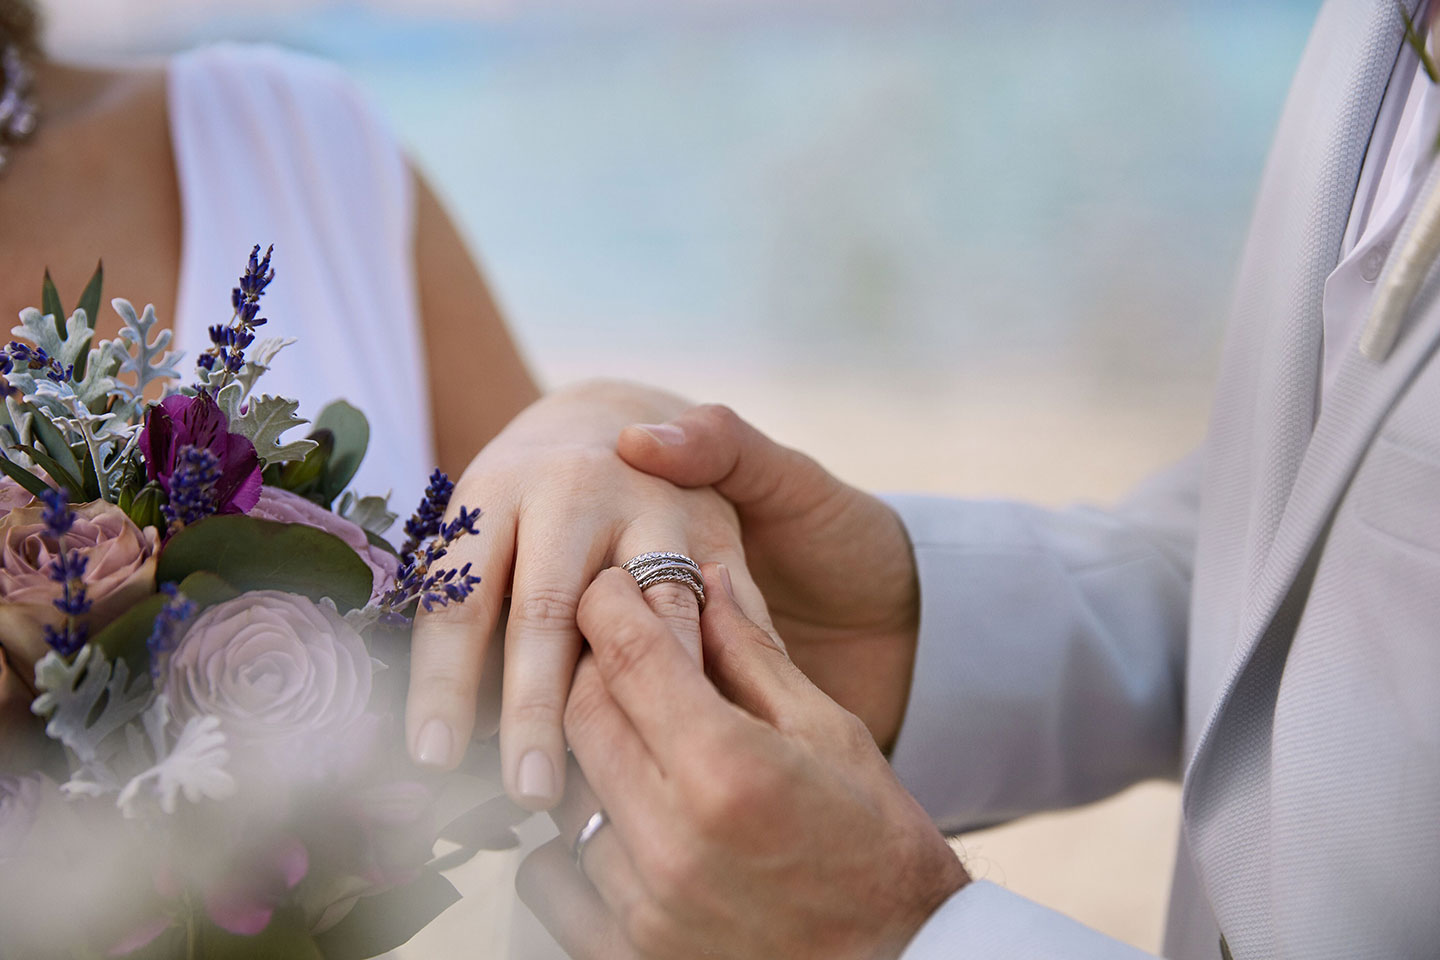 Обмен обручальными кольцами крупным планом на свадебной церемонии